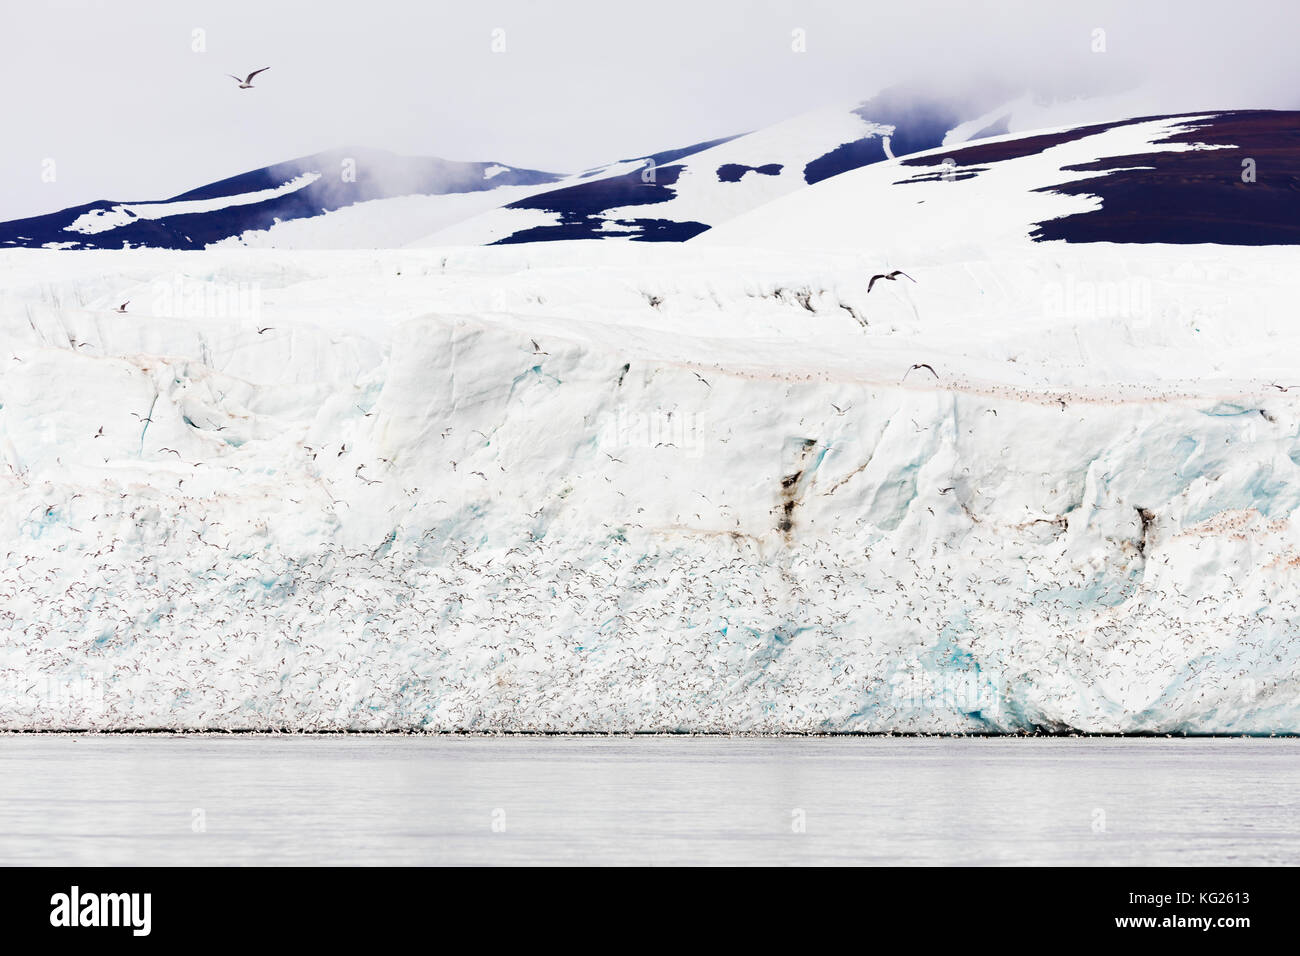 Les goélands kittywake à pattes noires (rissa), hornbreen glacier, Spitsbergen, Svalbard, Norvège, Europe, de l'Arctique Banque D'Images